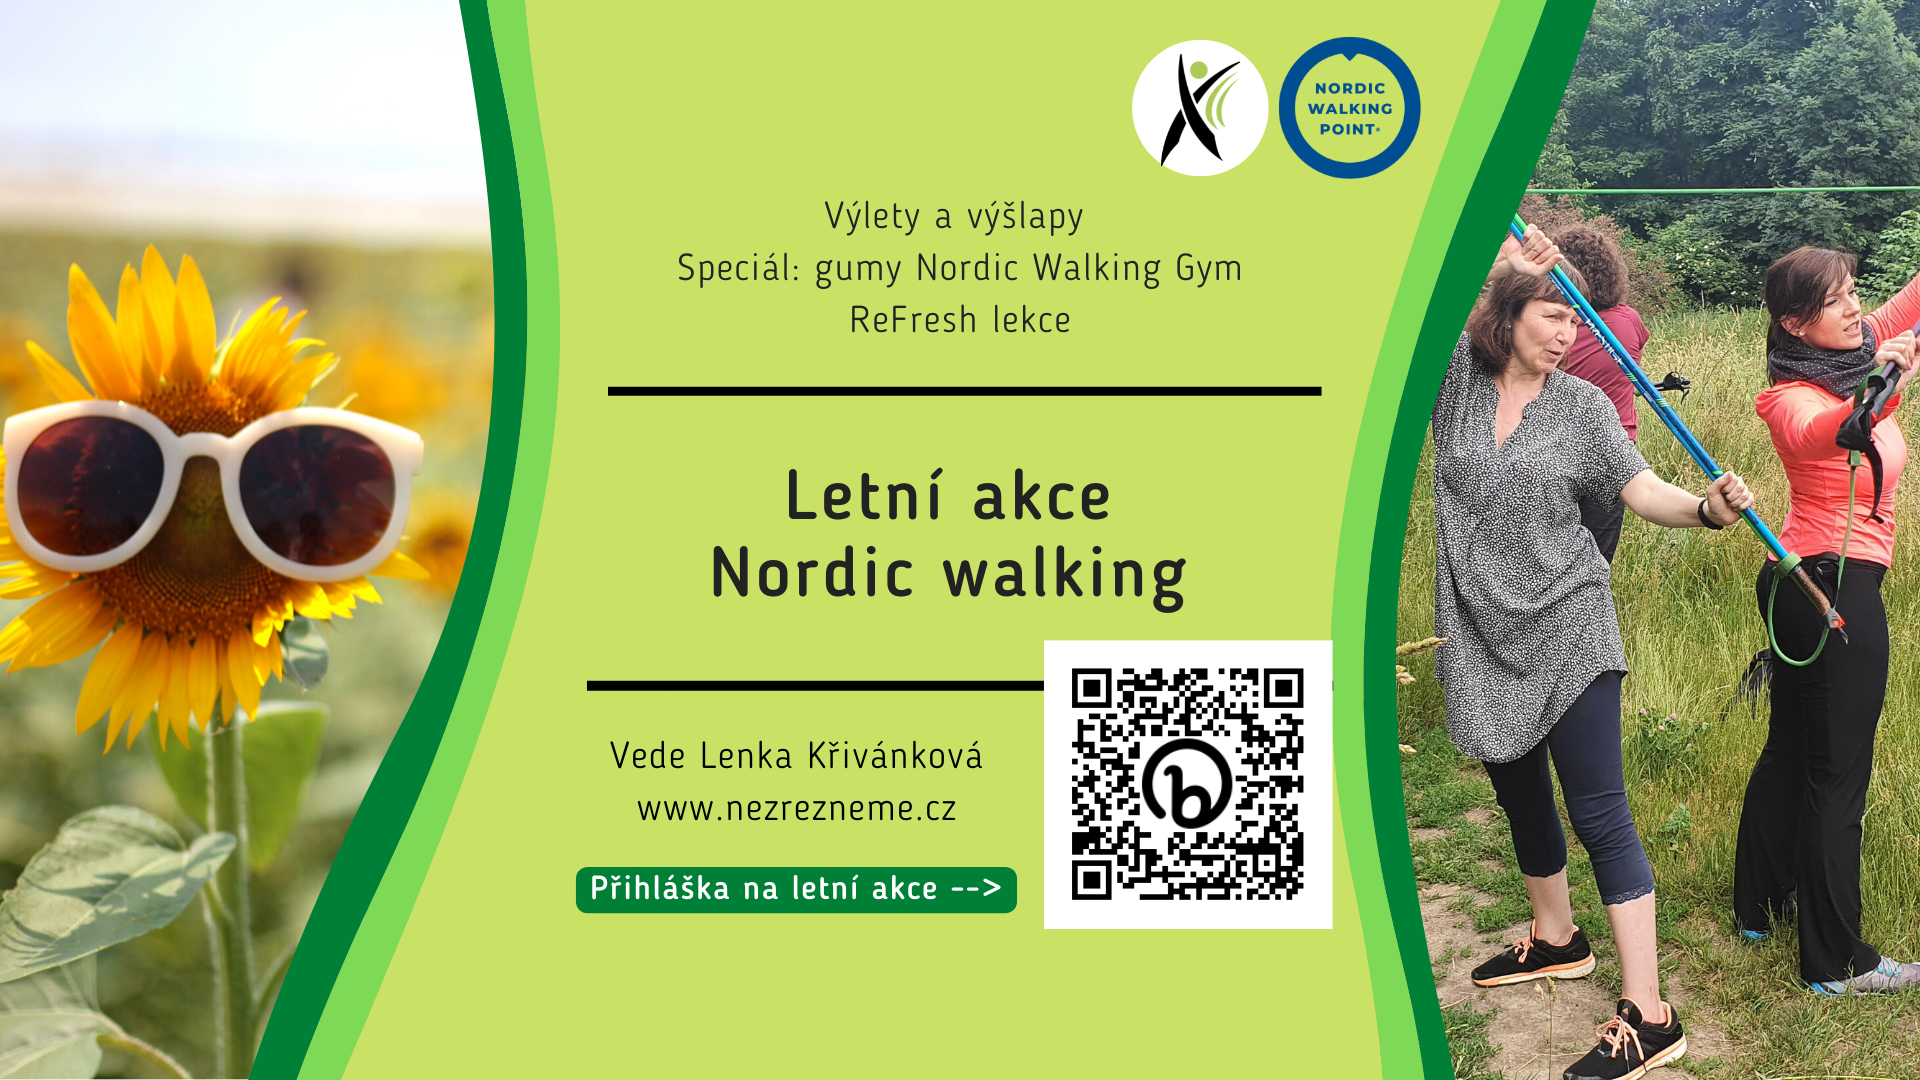 Letní akce 2022 s nordic walking: výlety, výšlapy, kondiční ReFresh, speciál s gumami Nordic Walking Gym. Pořádá Lenka Křivánková